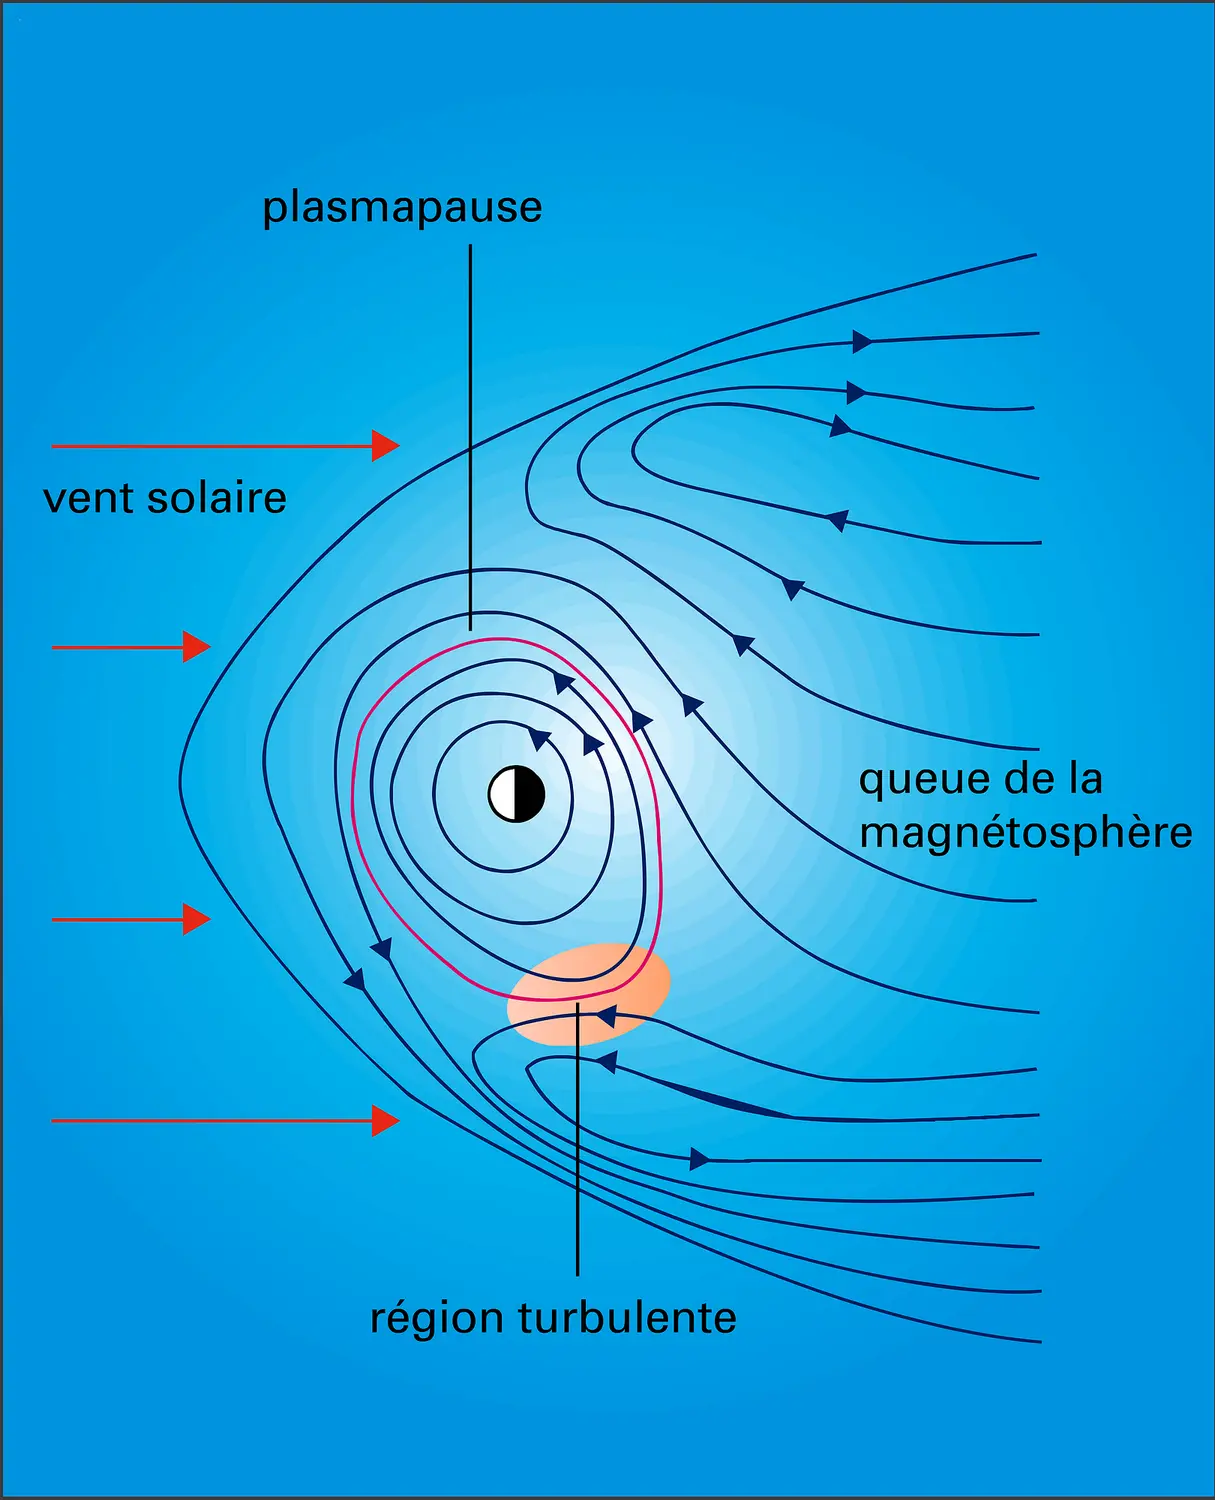 Mouvement de convection du plasma magnétosphérique